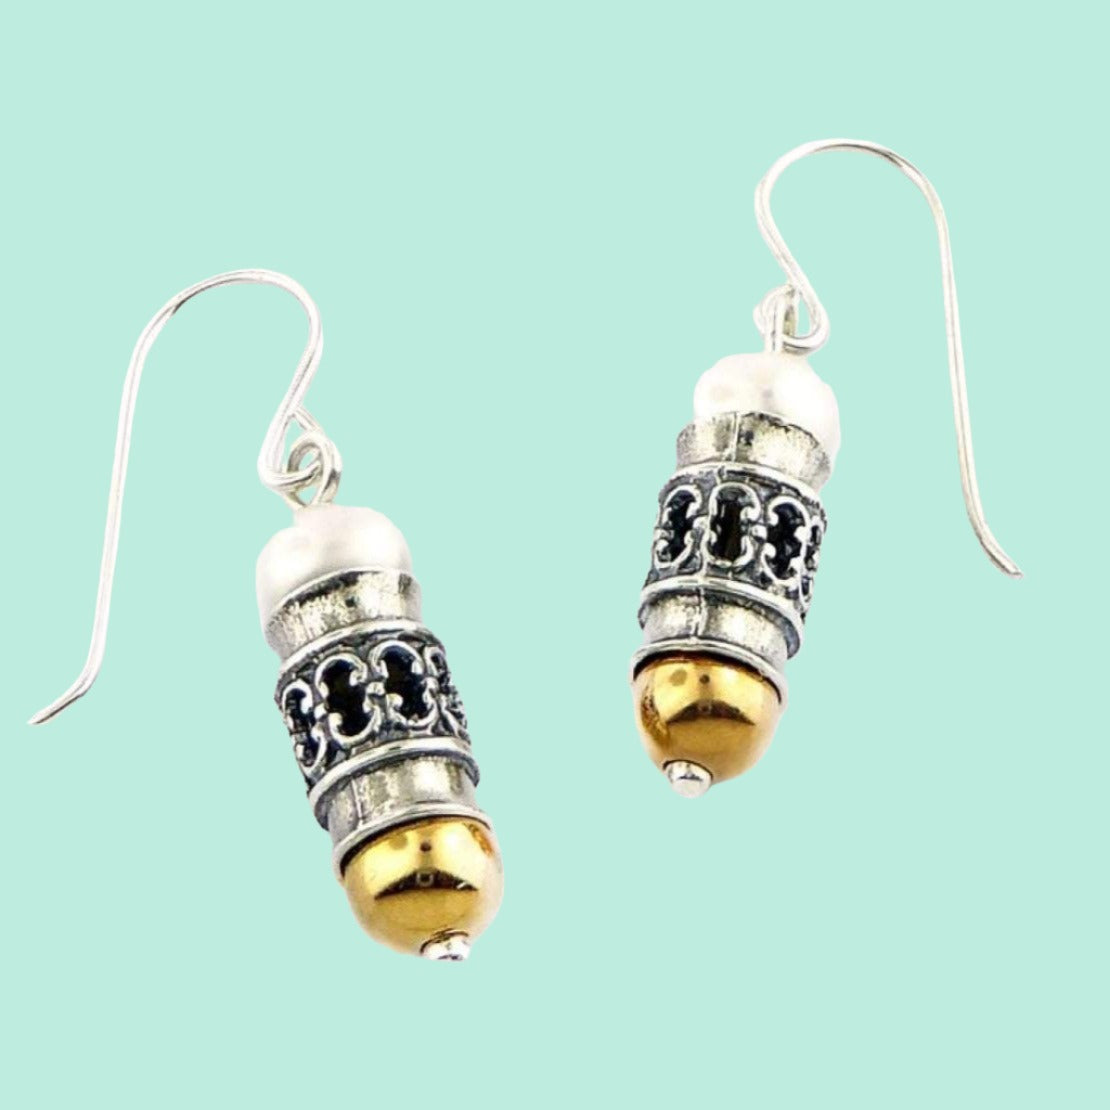 Bluenoemi Jewelry Earrings Silver and goldfilled earrings with pearls / mezuzah shape earrings for women